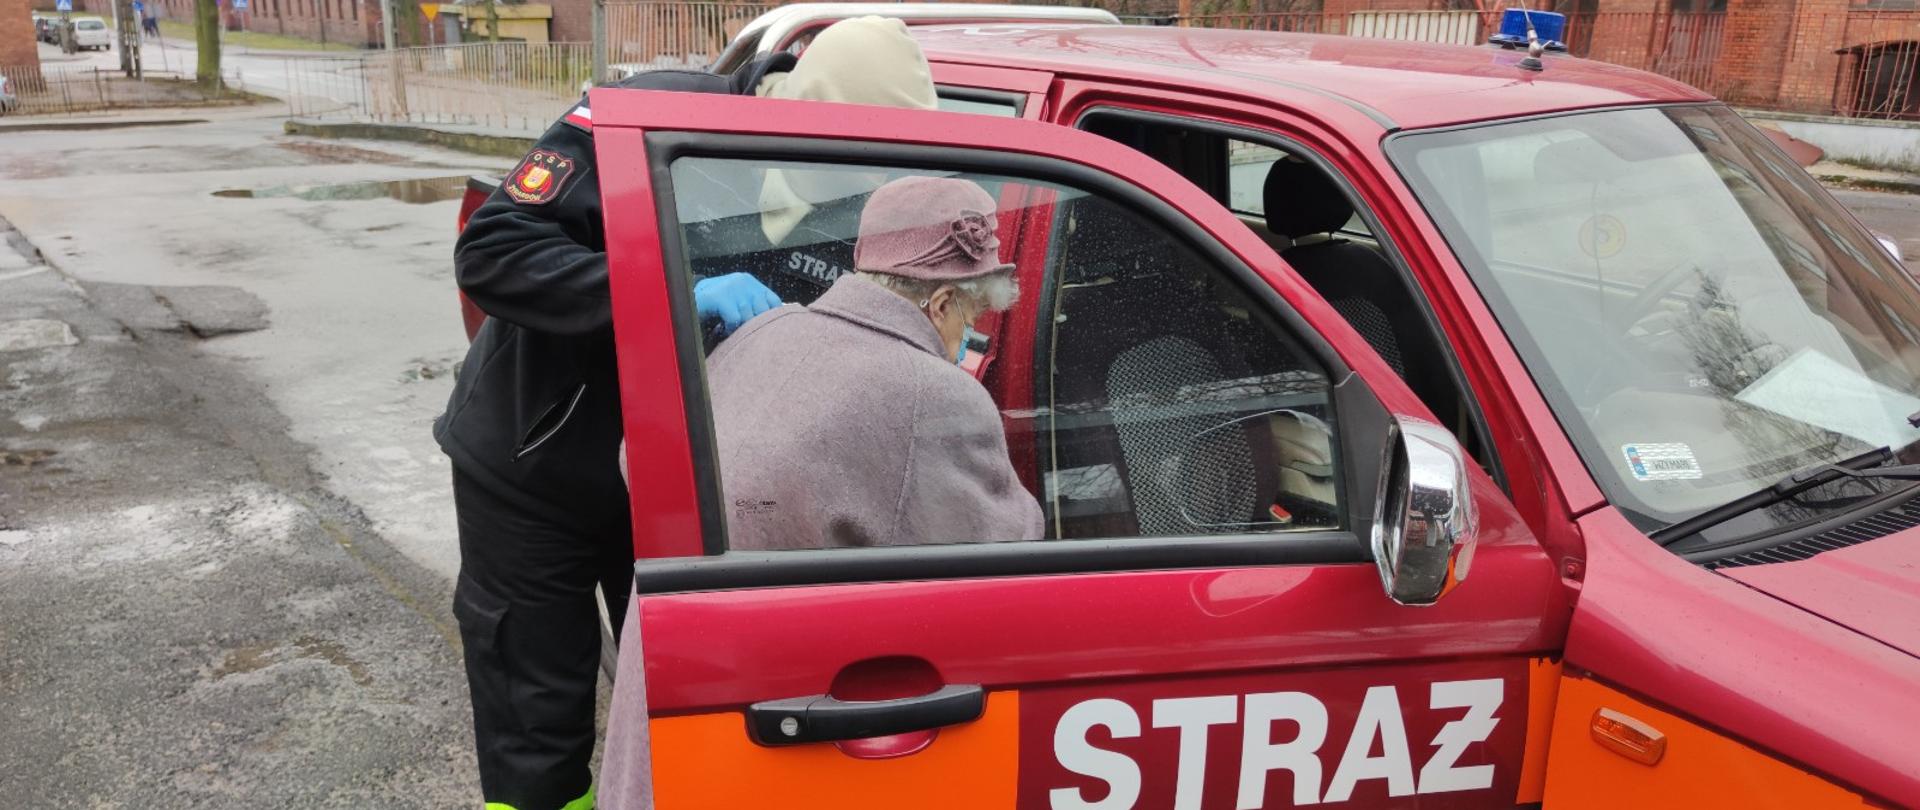 Strażak pomaga starszej kobiecie wsiąść do samochodu strażackiego. W tle budynki z czerwonej cegły.